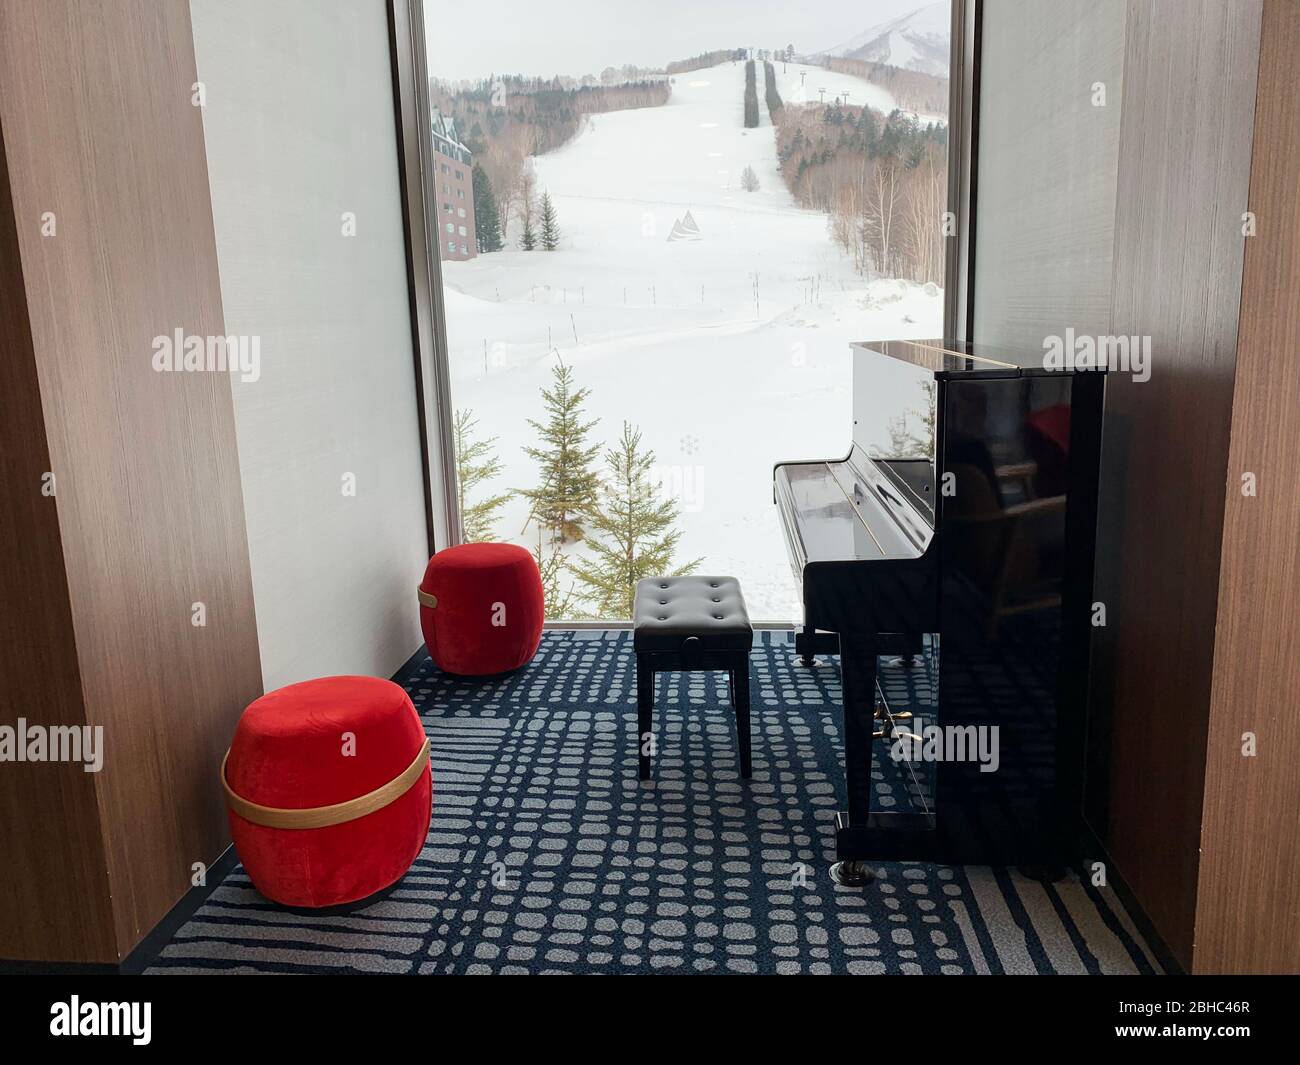 6 mars 2019: Club Med Tomamu Japon - Piano en face de la belle vue sur la neige Banque D'Images